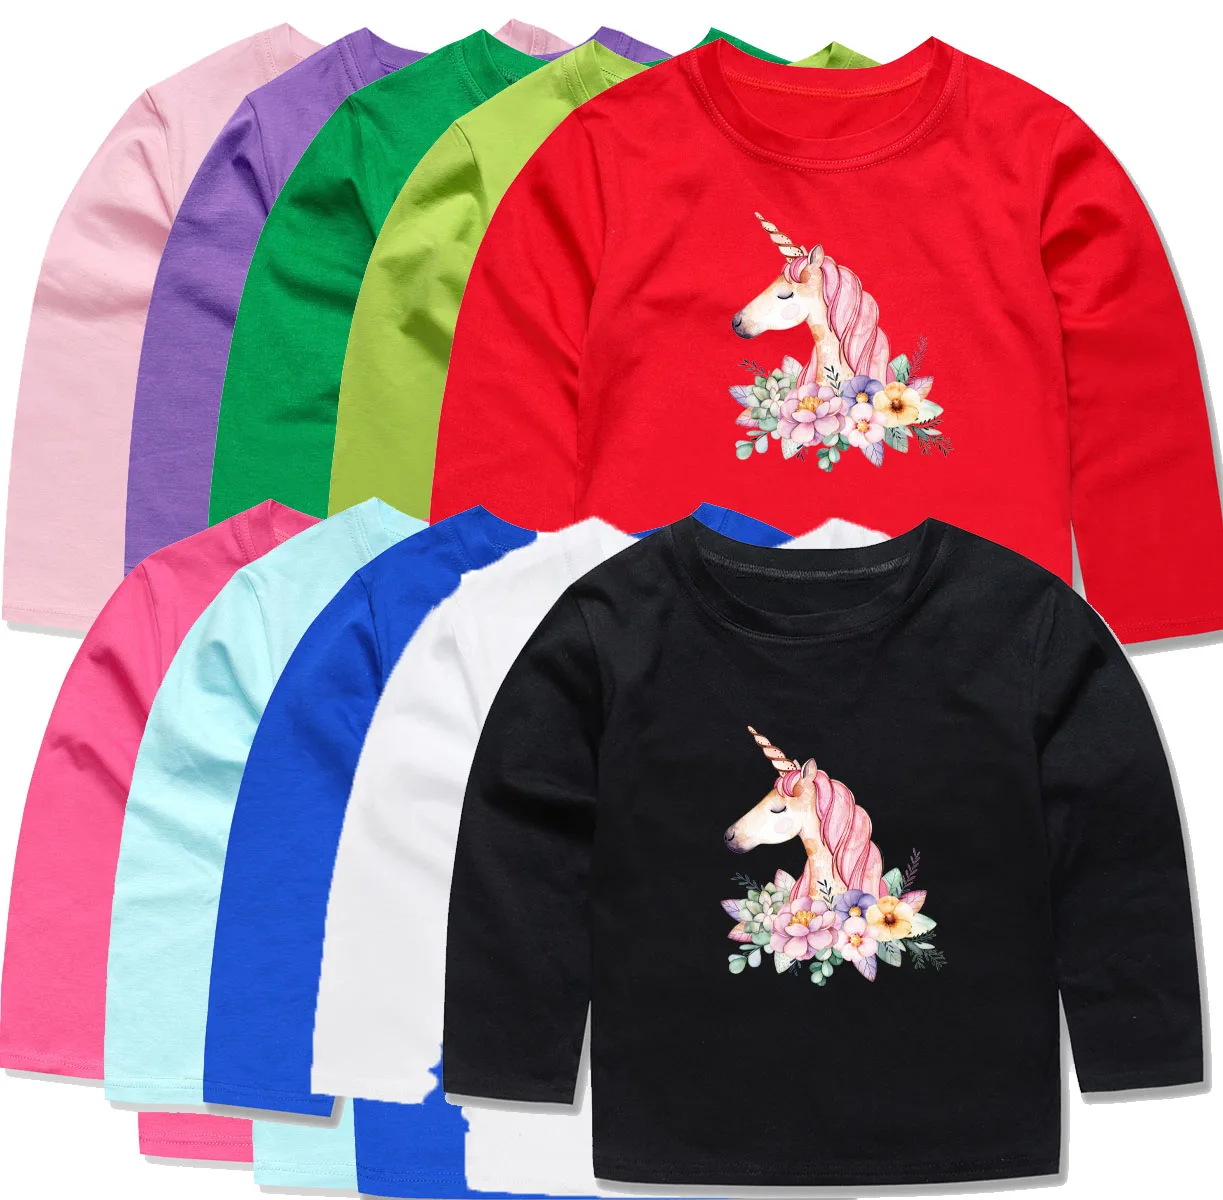 Г. Новейшие хлопковые футболки с длинными рукавами для девочек детские футболки с единорогом и цветочным рисунком топы для девочек, детские футболки для детей от 2 до 14 лет